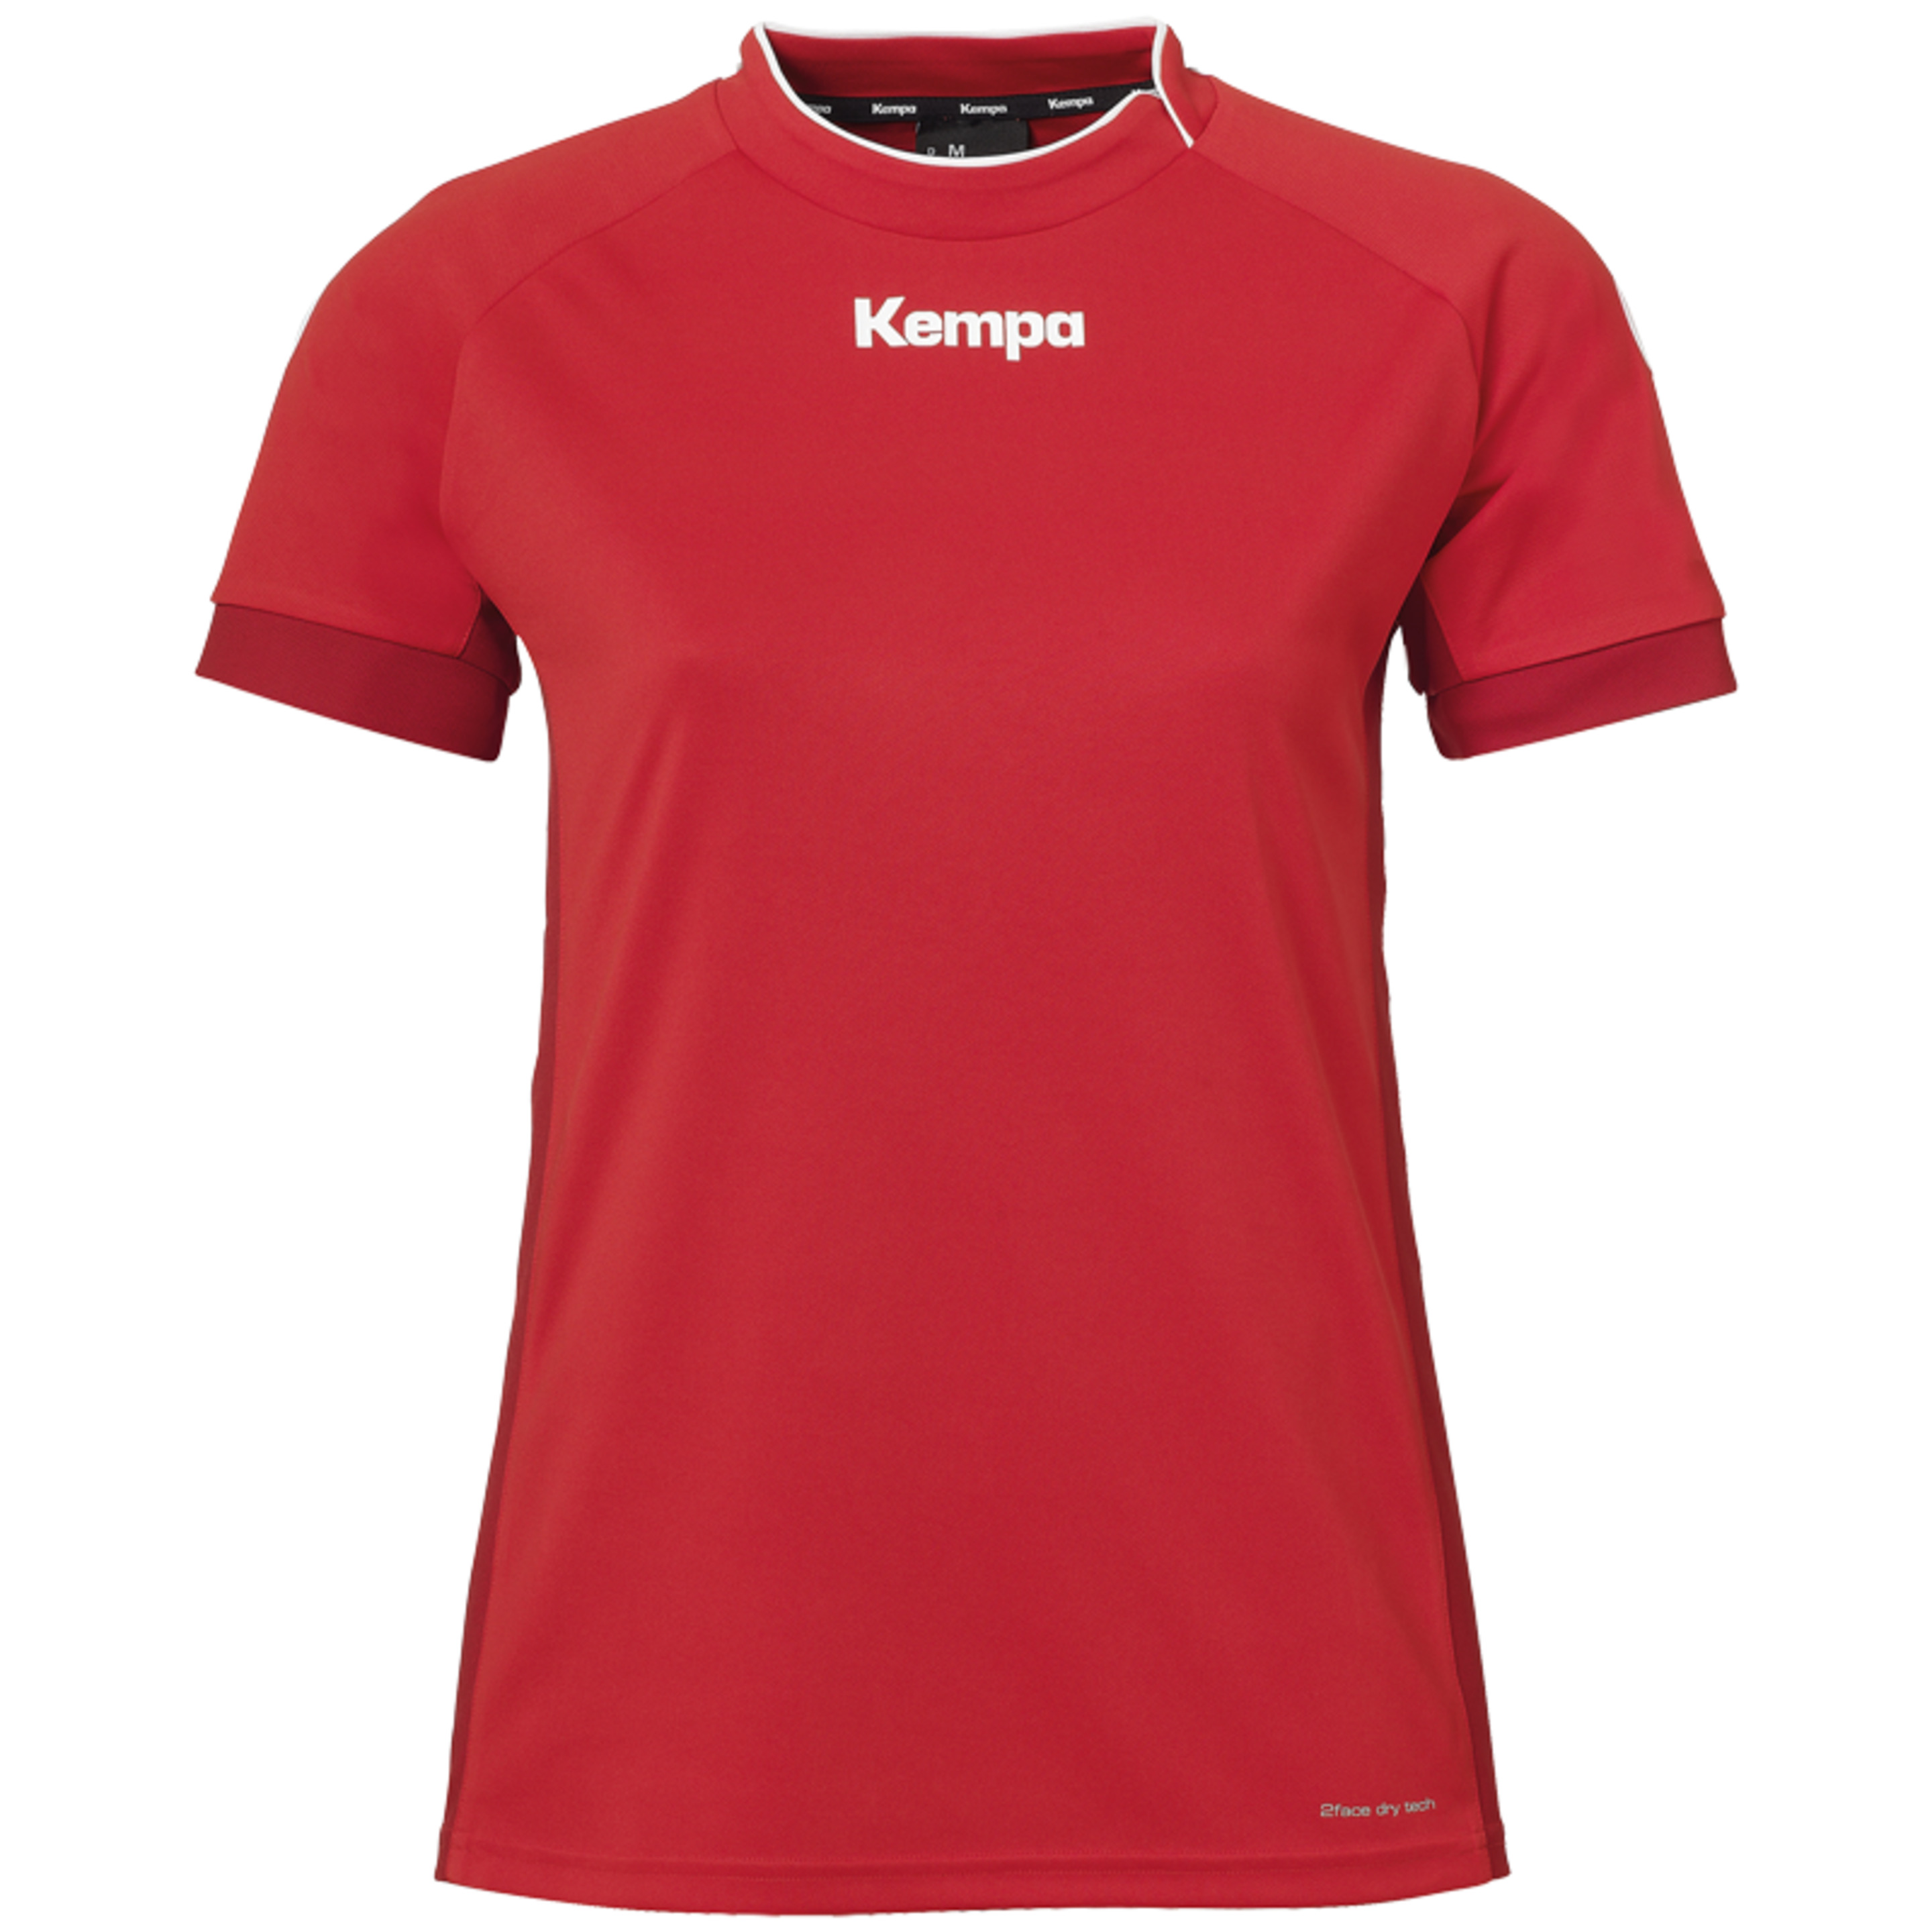 Prime Shirt Women Rojo/rojo Chili Kempa - rojo - 